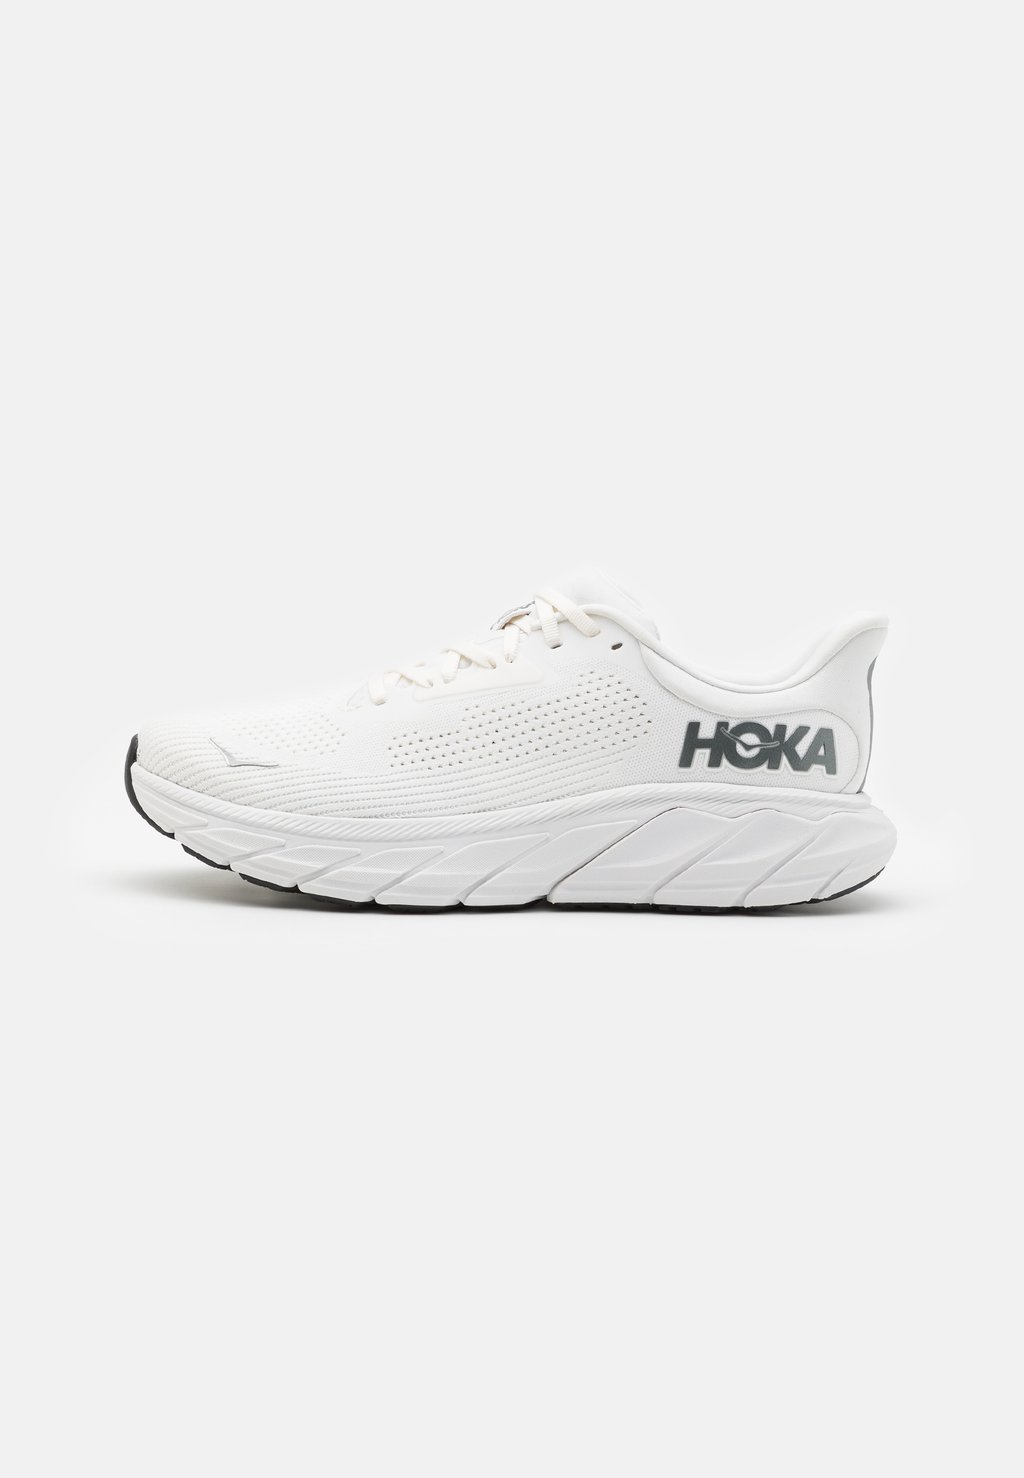 кроссовки для стабилизирующего бега Arahi 7 HOKA, цвет blanc de blanc